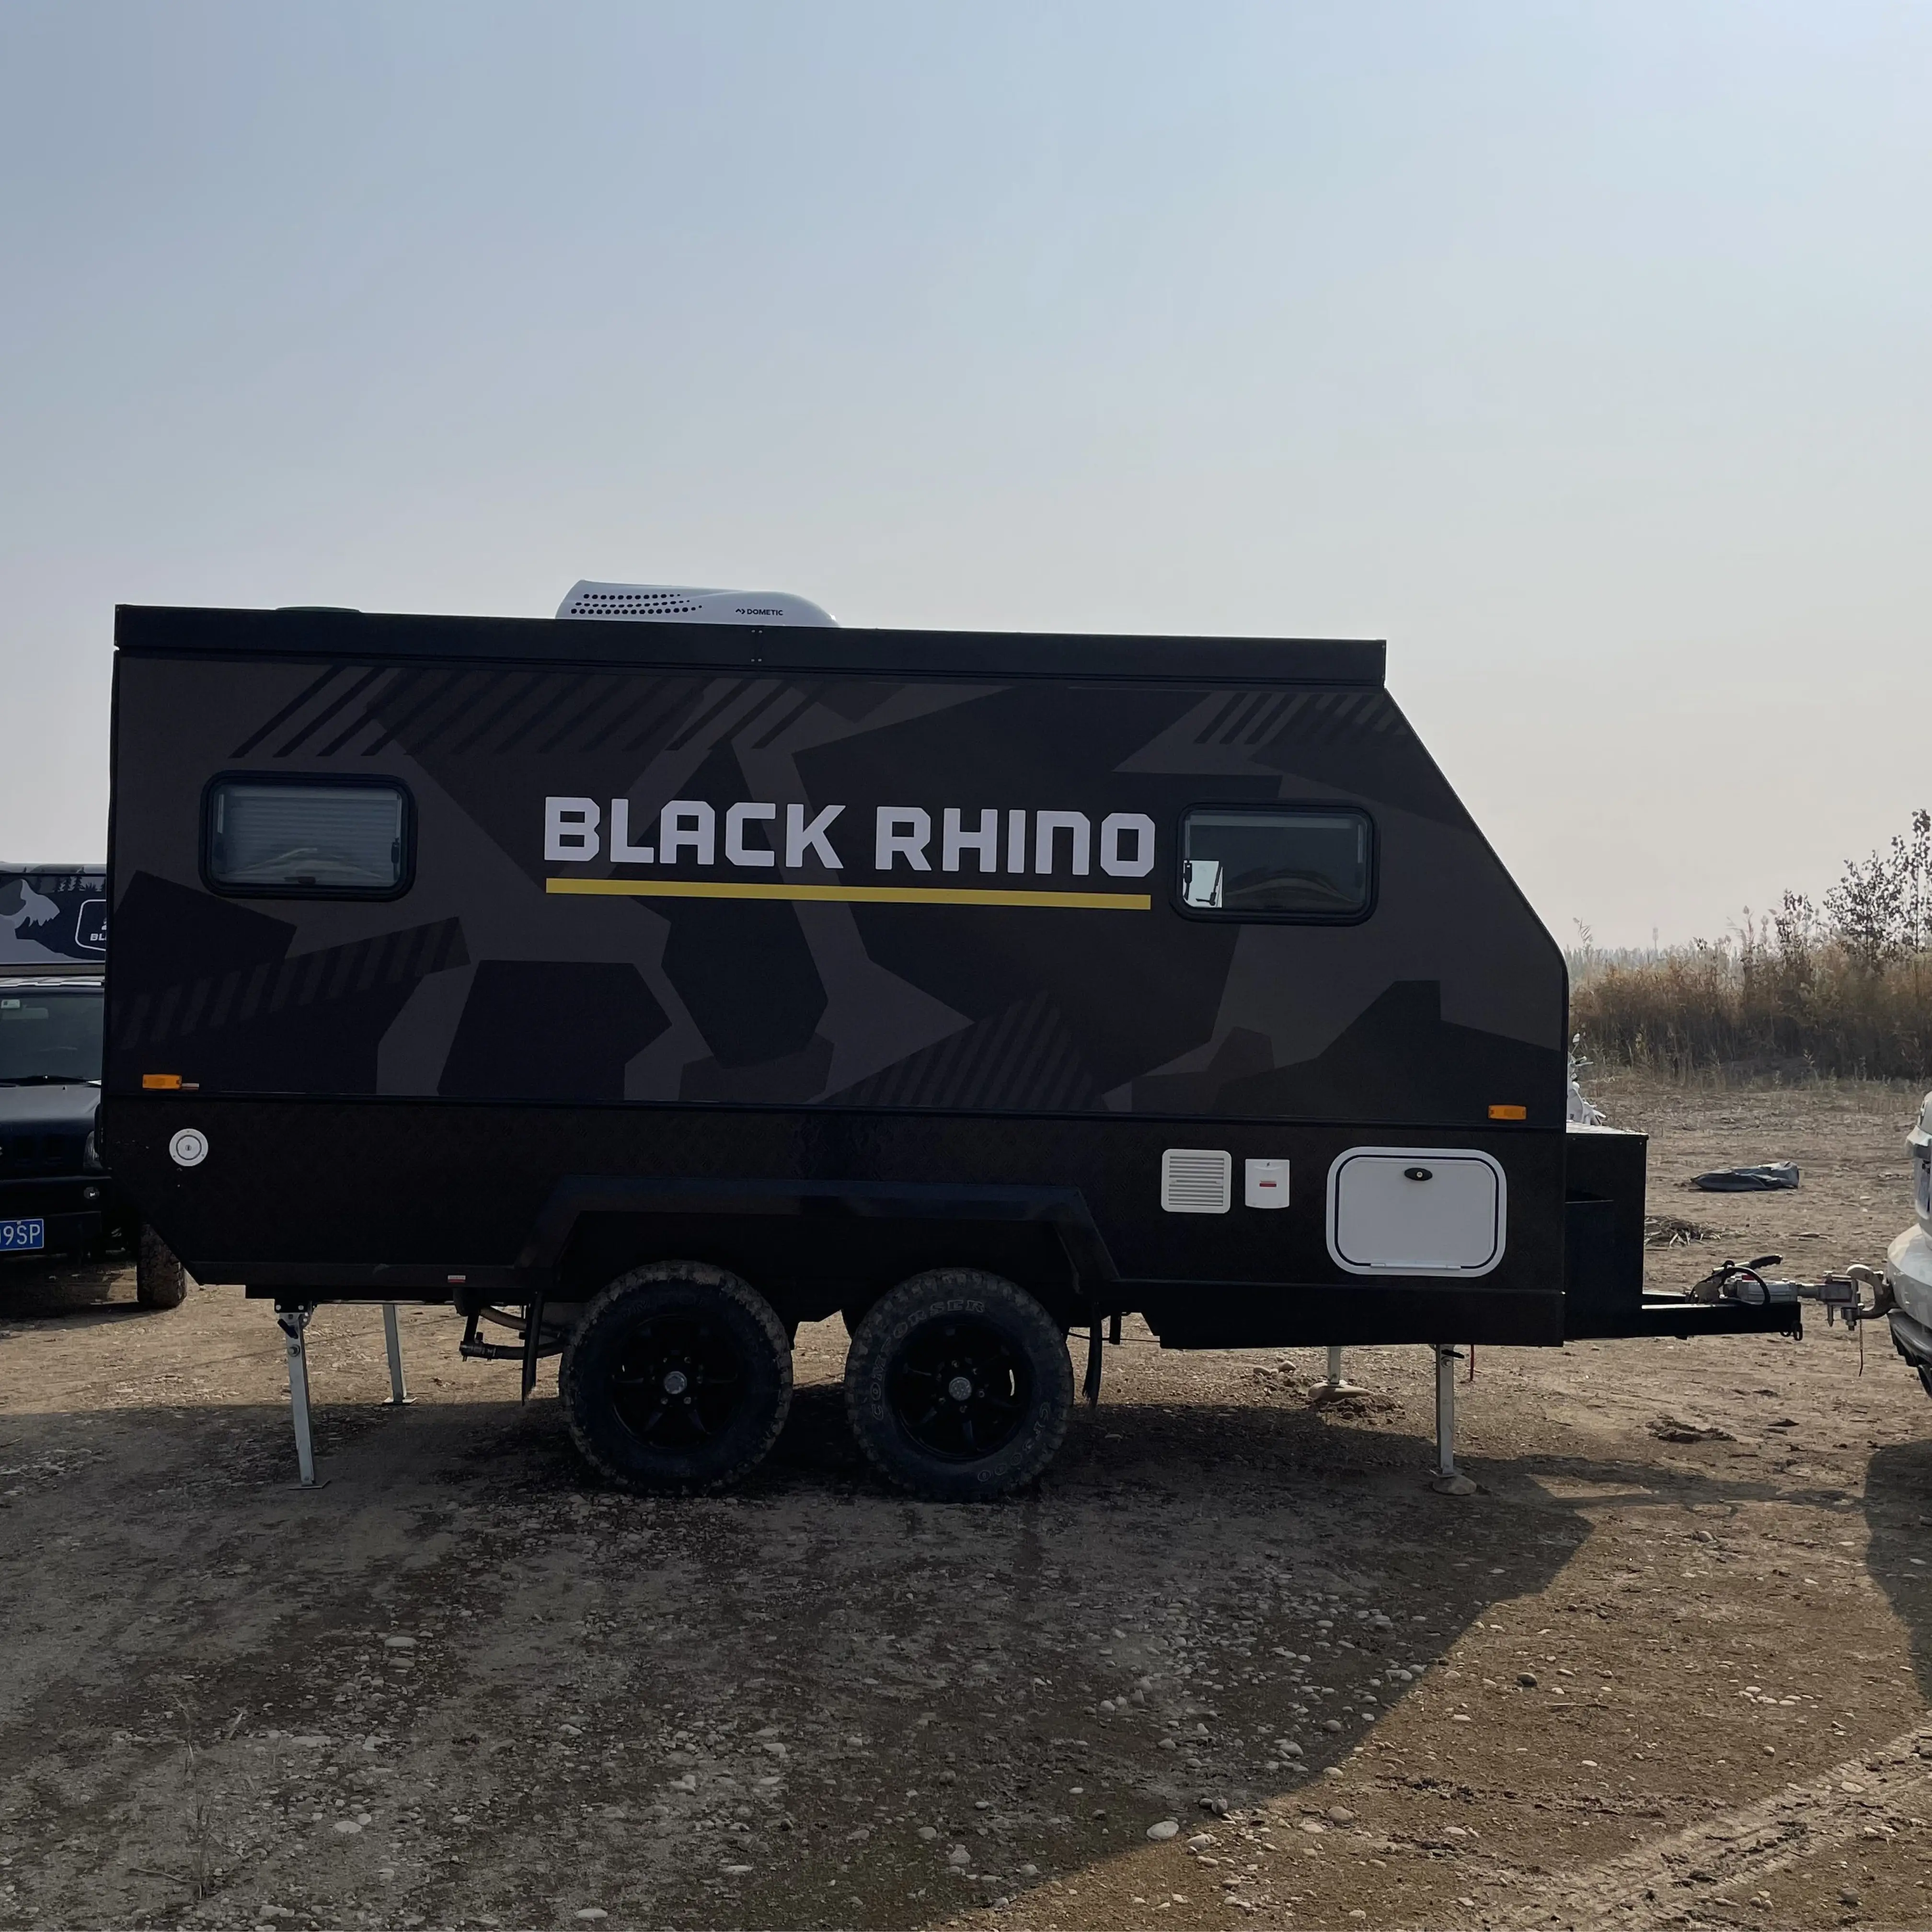 Chinês 12v elétrico Off road rv pop top híbrido caravana com chuveiro e WC camping pod trailer